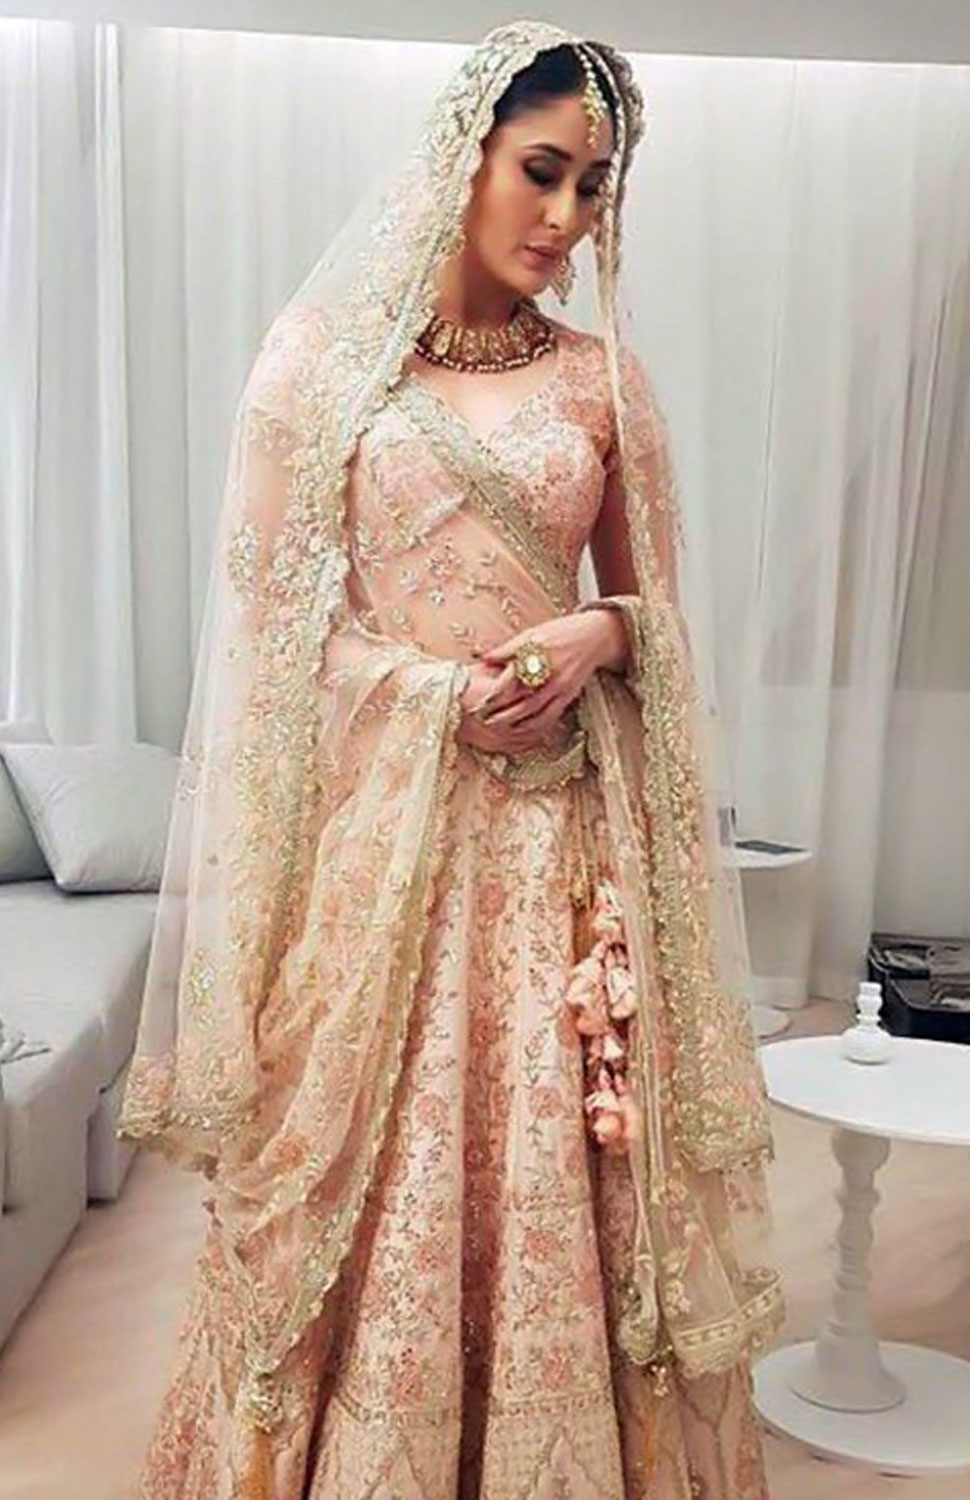 Kareena Kapoor steps out as a stunning bride at Doha